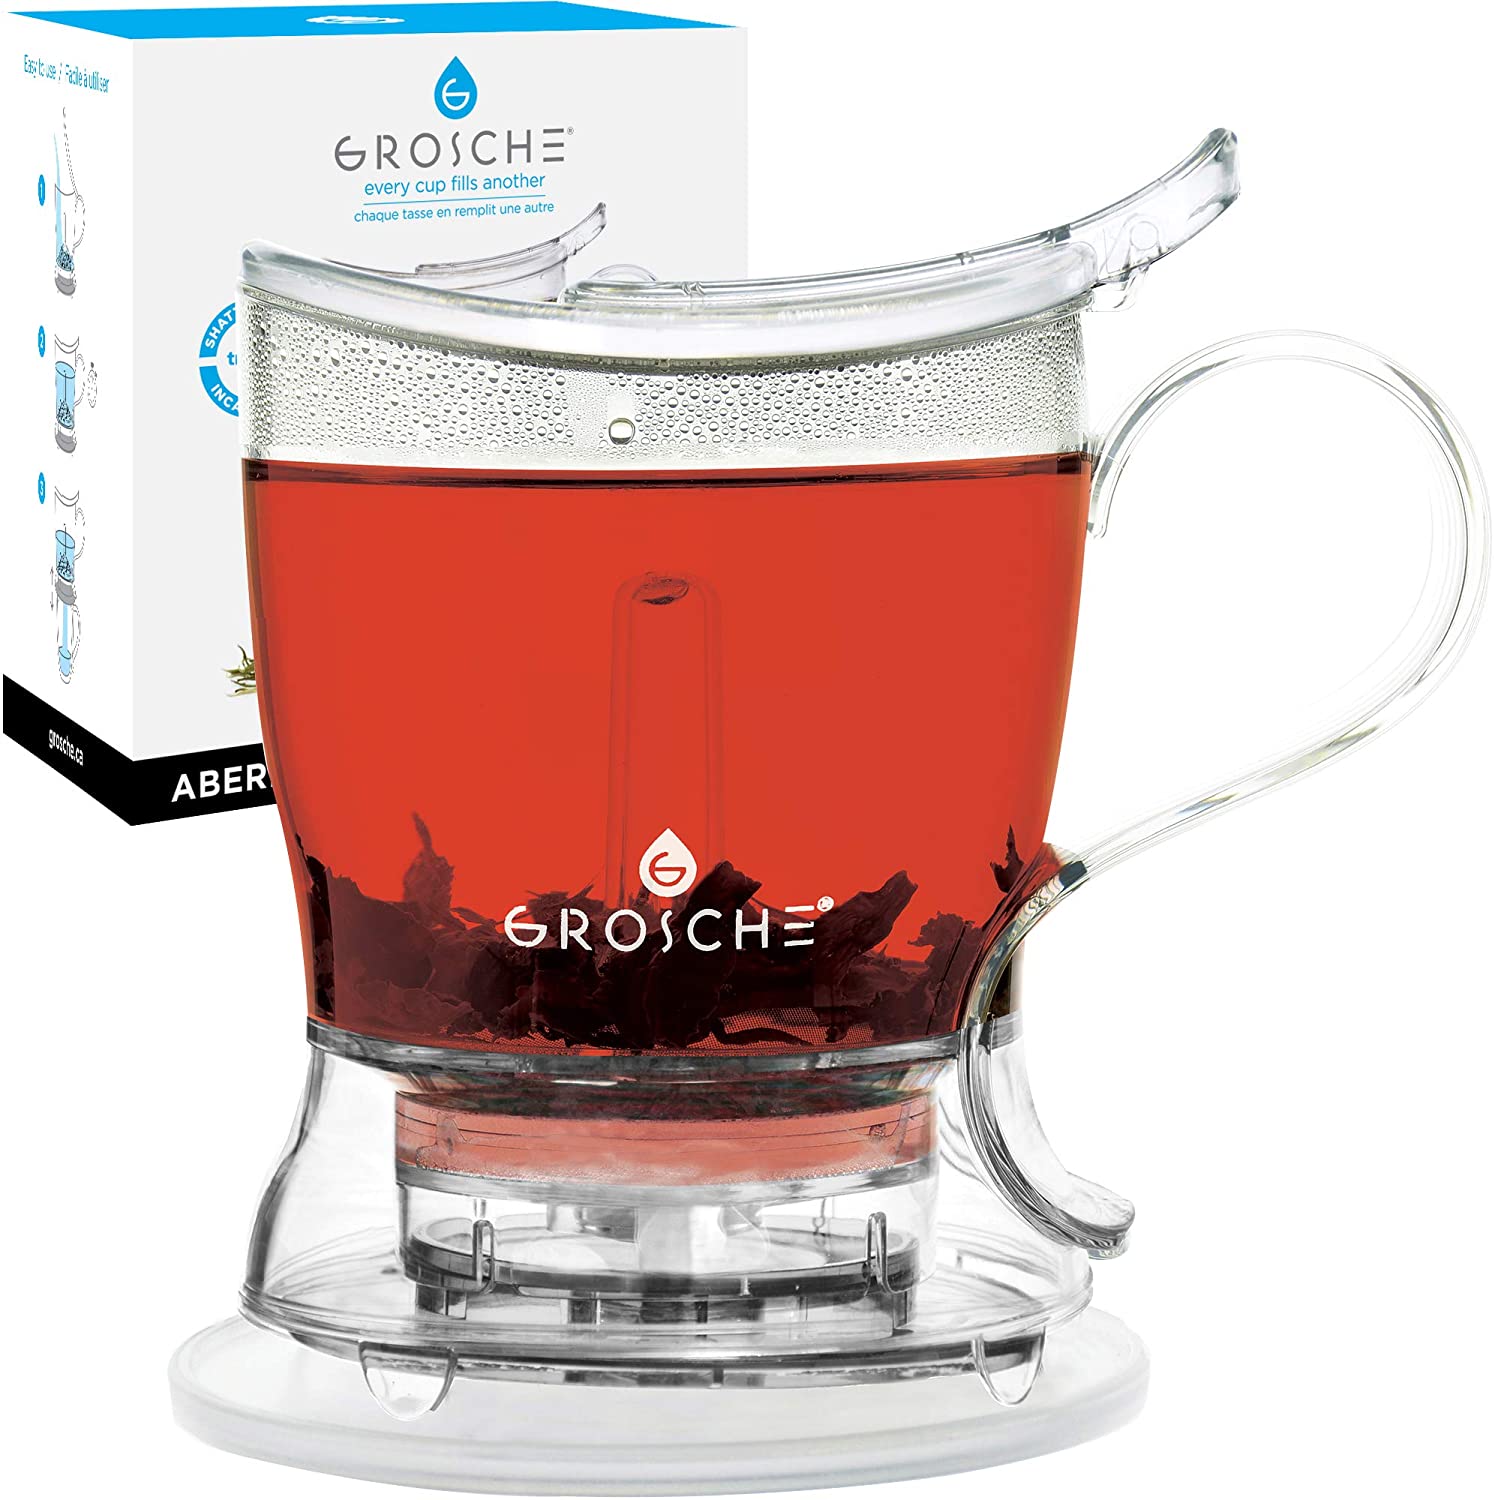 GROSCHE Aberdeen PERFECT TEA MAKER Tea pot with coaster, Tea